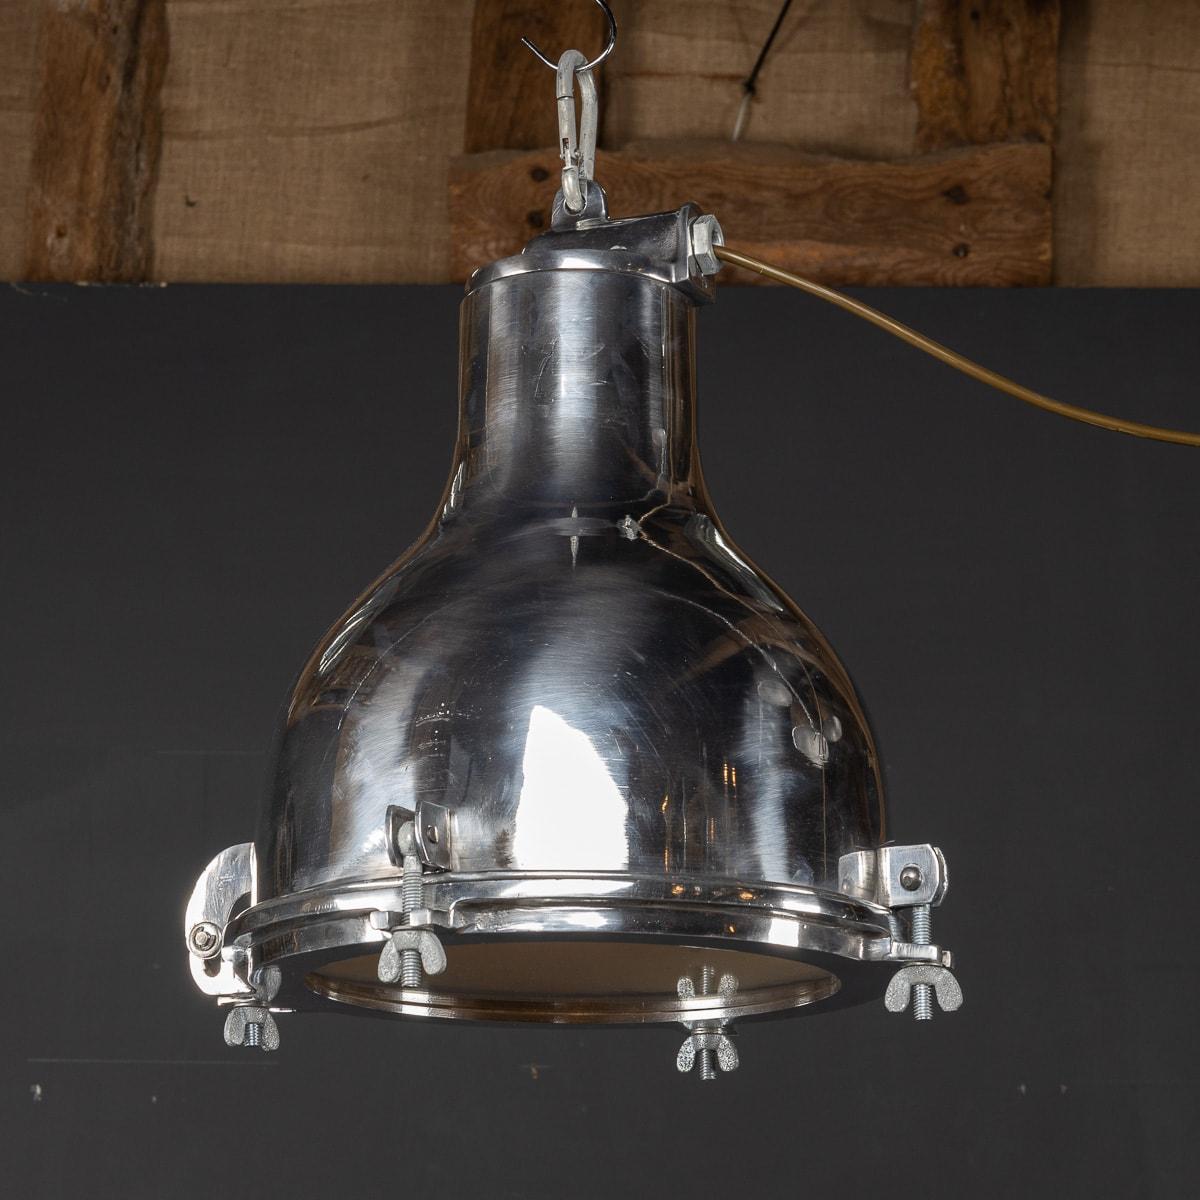 Une fabuleuse lampe en aluminium poli ayant appartenu à un navire danois qui a fait le tour du monde en livrant des marchandises. Aujourd'hui, il a été magnifiquement récupéré et restauré pour retrouver sa gloire d'antan.

CONDITION
En bon état. (se